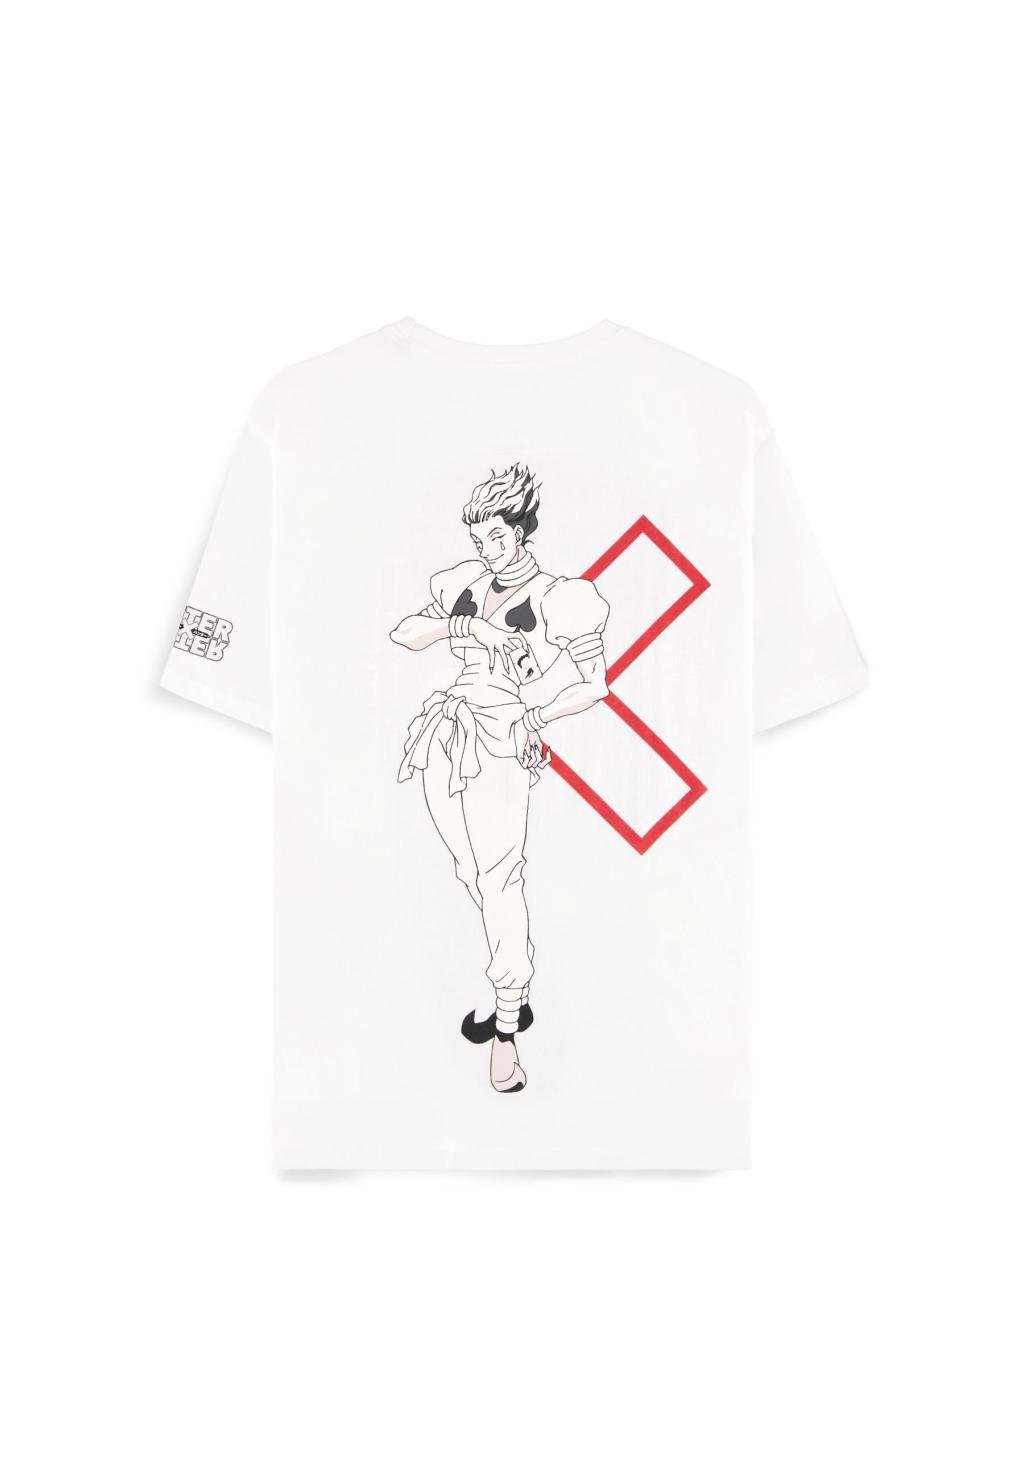 HUNTER X HUNTER - Hisoka - Women's T-shirt (XL)